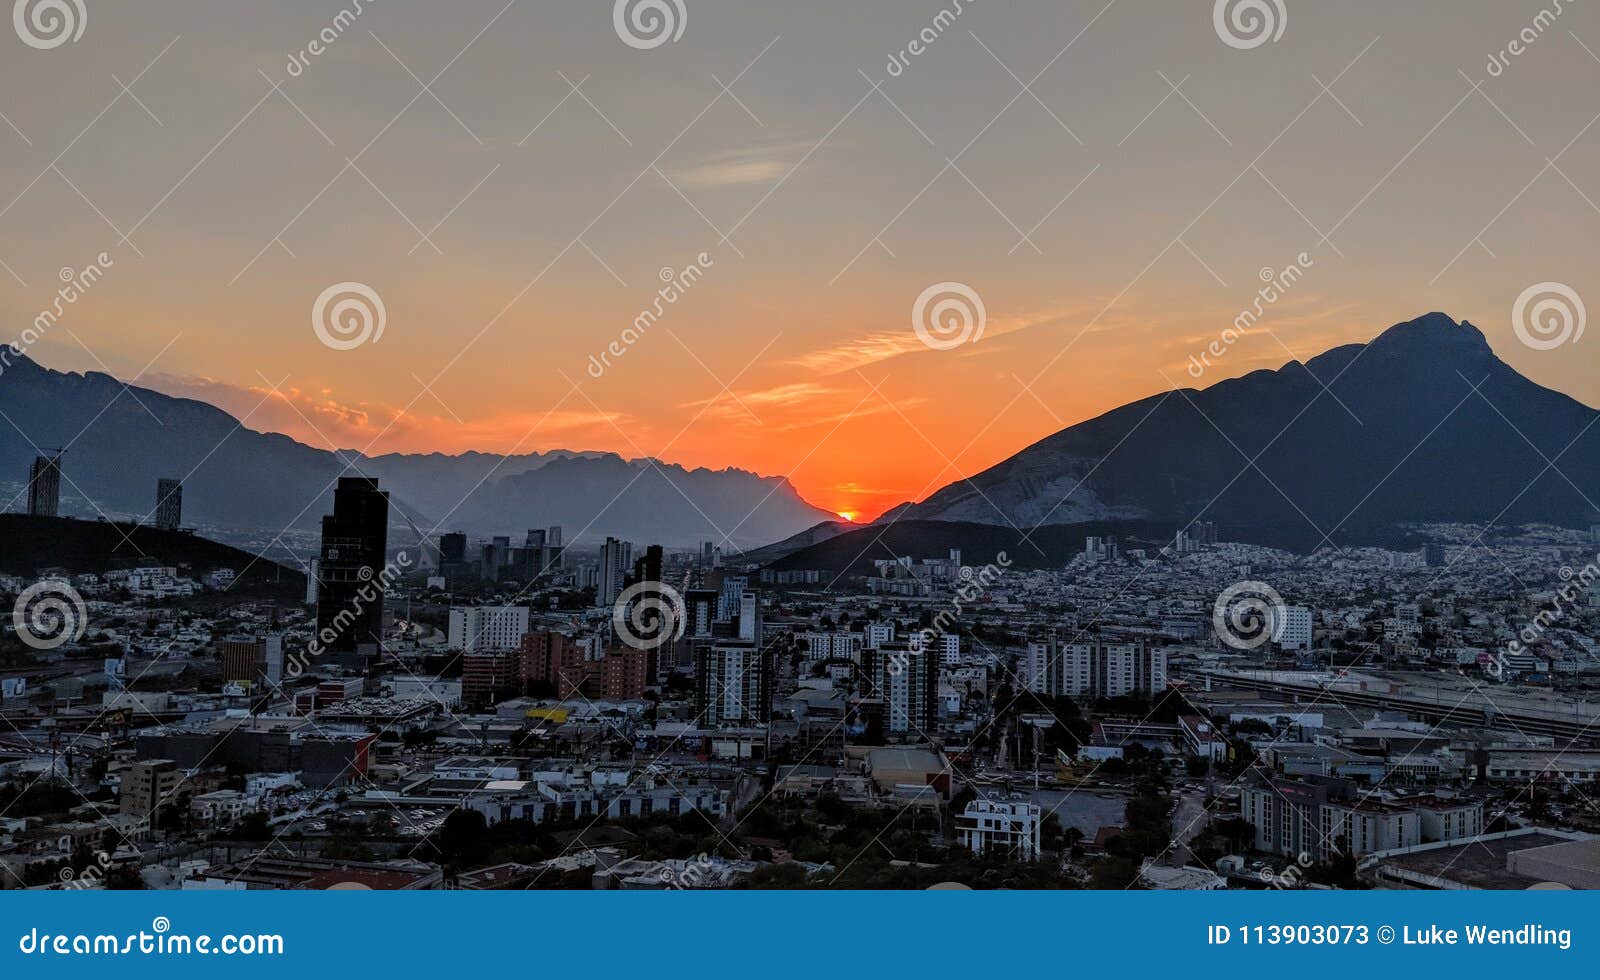 sunset over monterrey, mexico